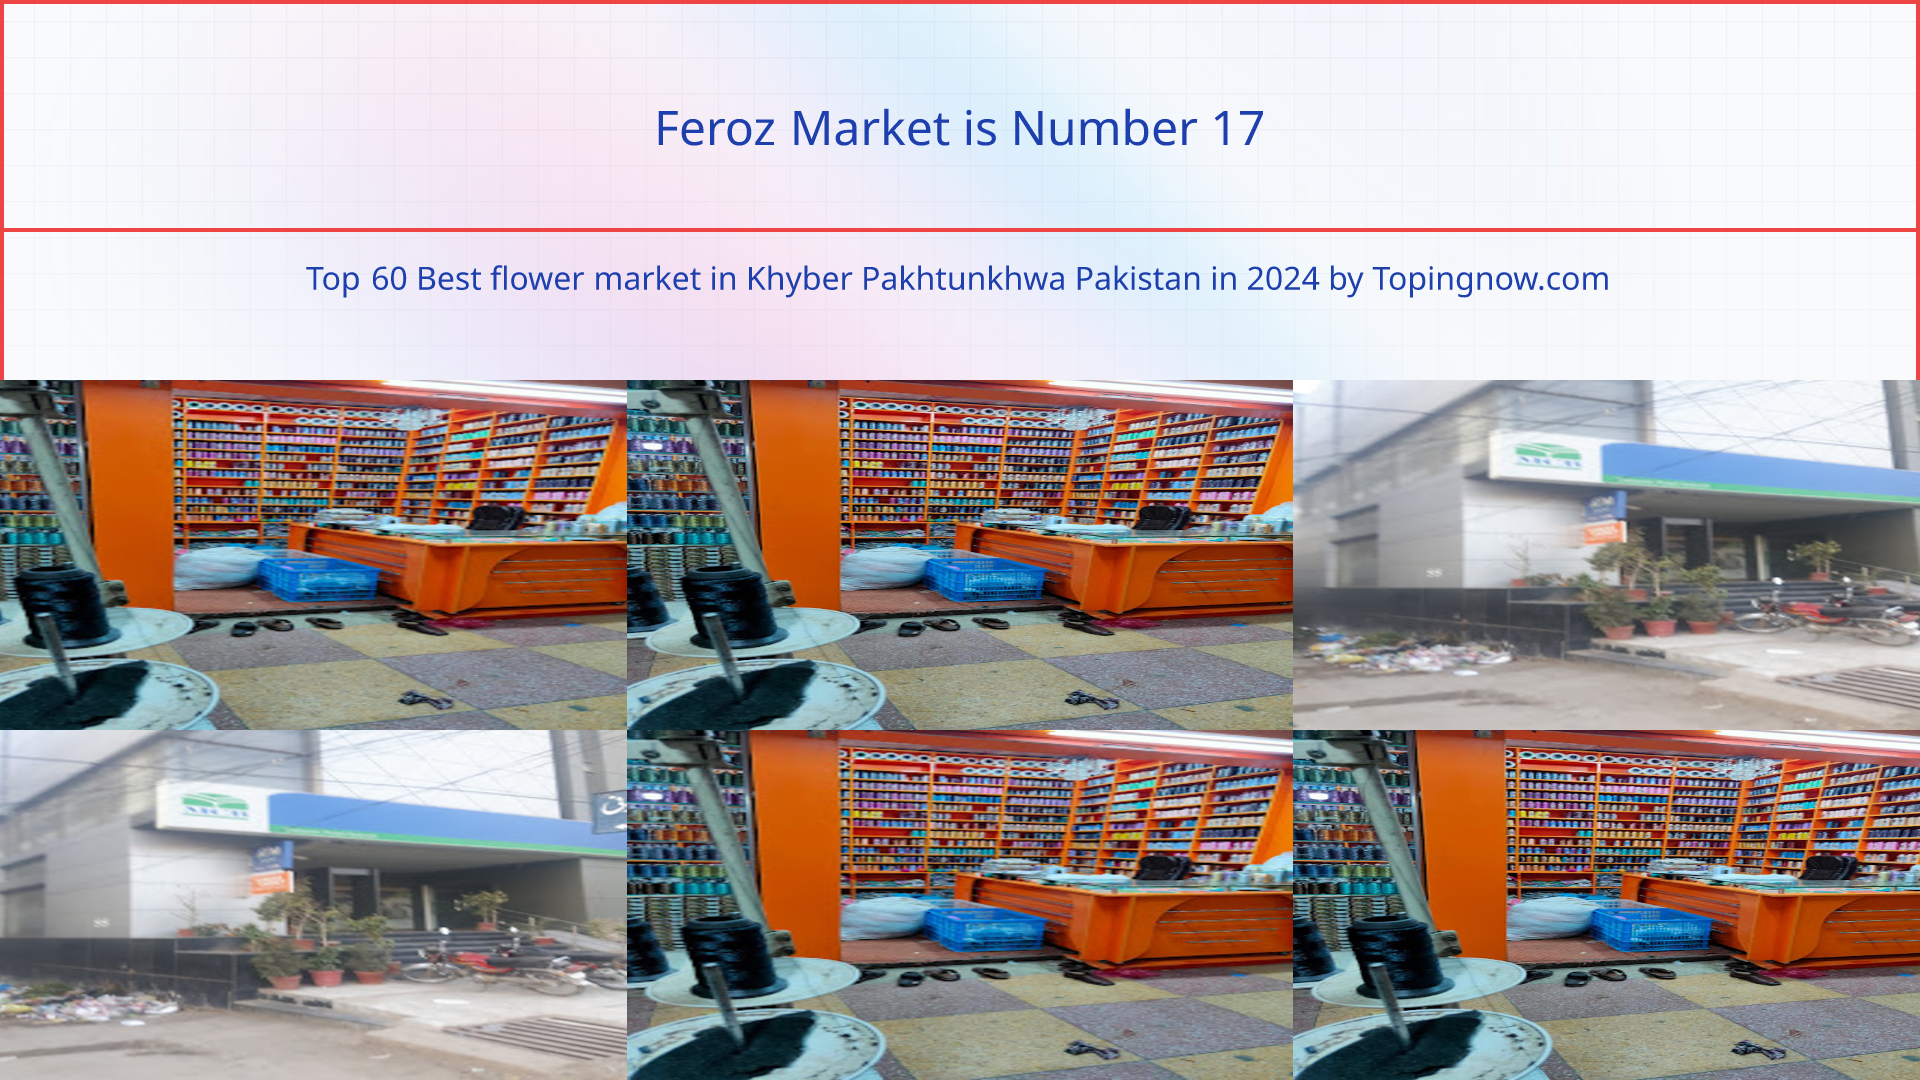 Feroz Market: Top 60 Best flower market in Khyber Pakhtunkhwa Pakistan in 2024